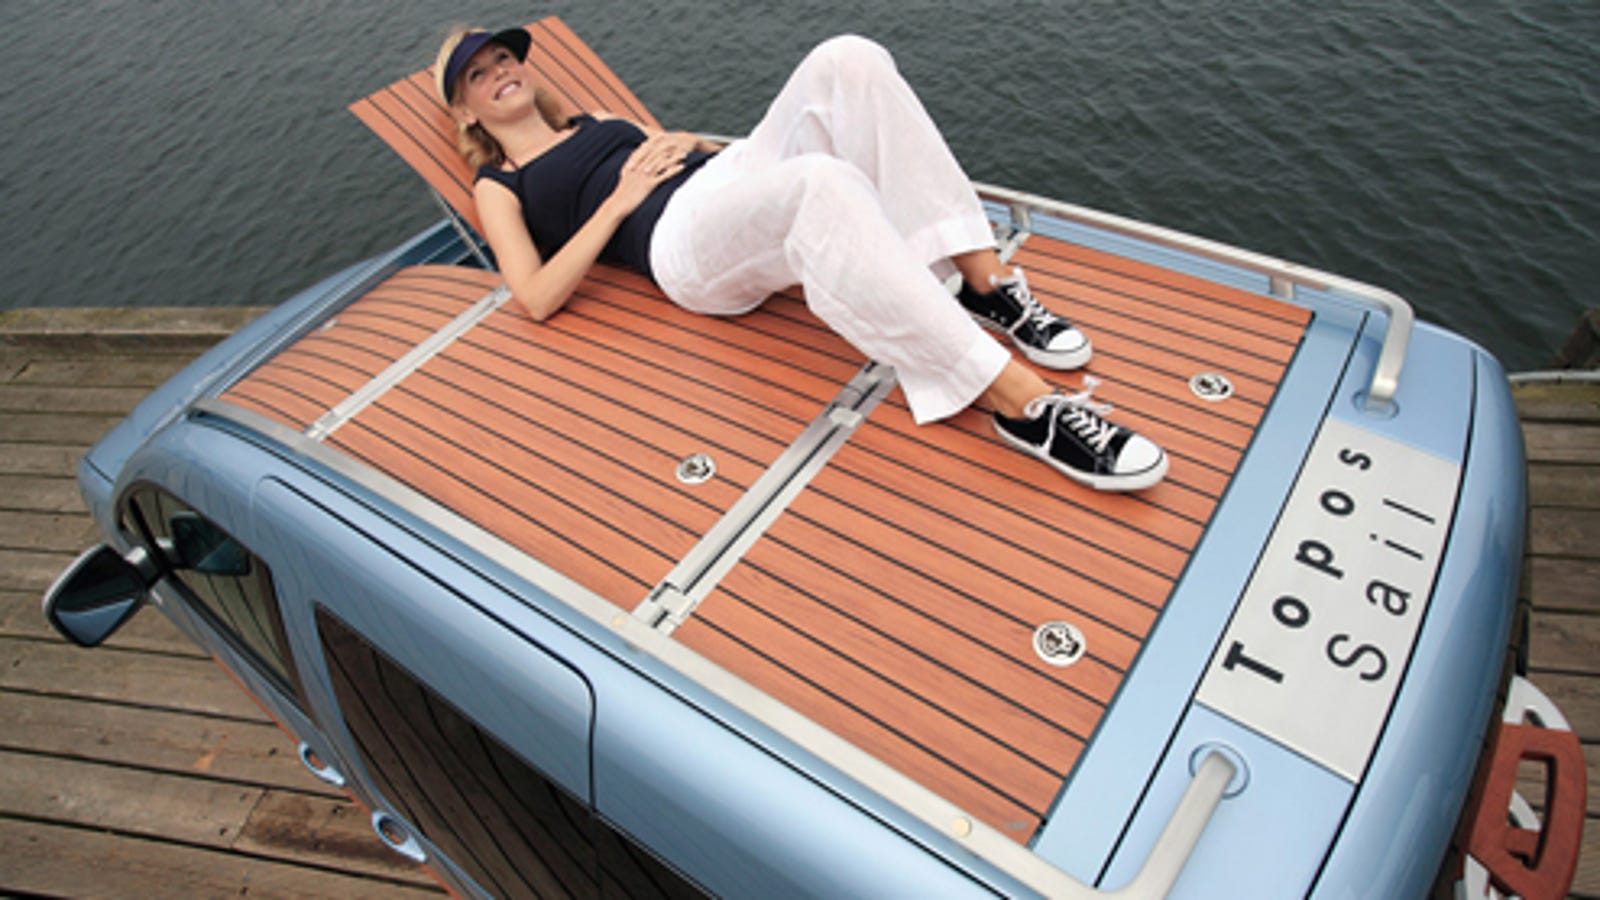 Volkswagen Caddy Van Features a Wooden Boat Deck For 